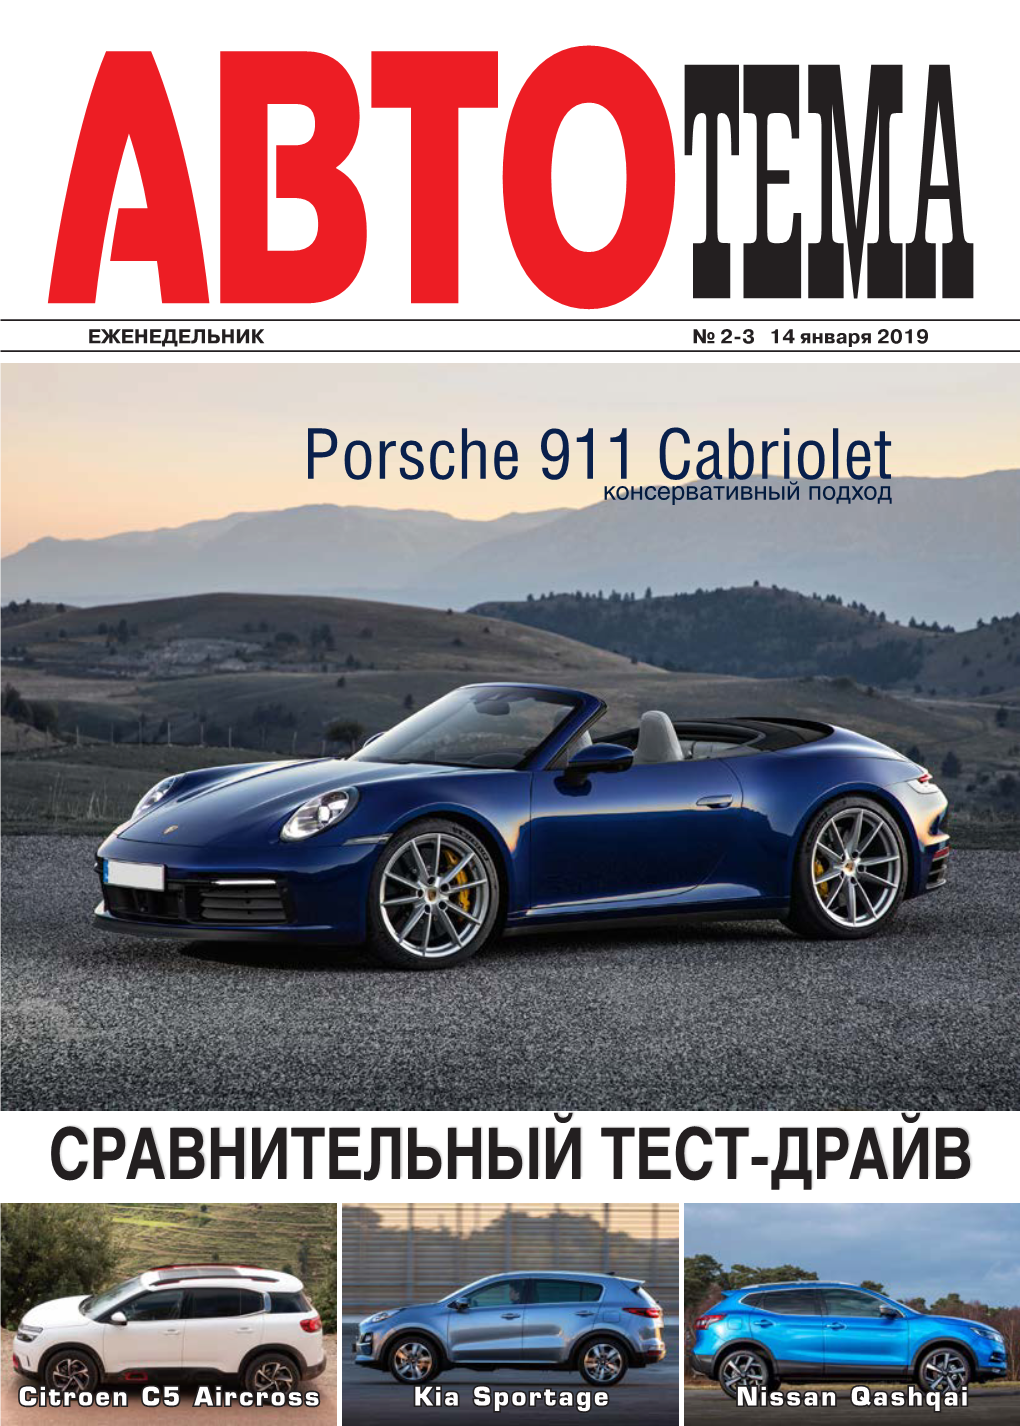 СРАВНИТЕЛЬНЫЙ ТЕСТ-ДРАЙВ Porsche 911 Cabriolet